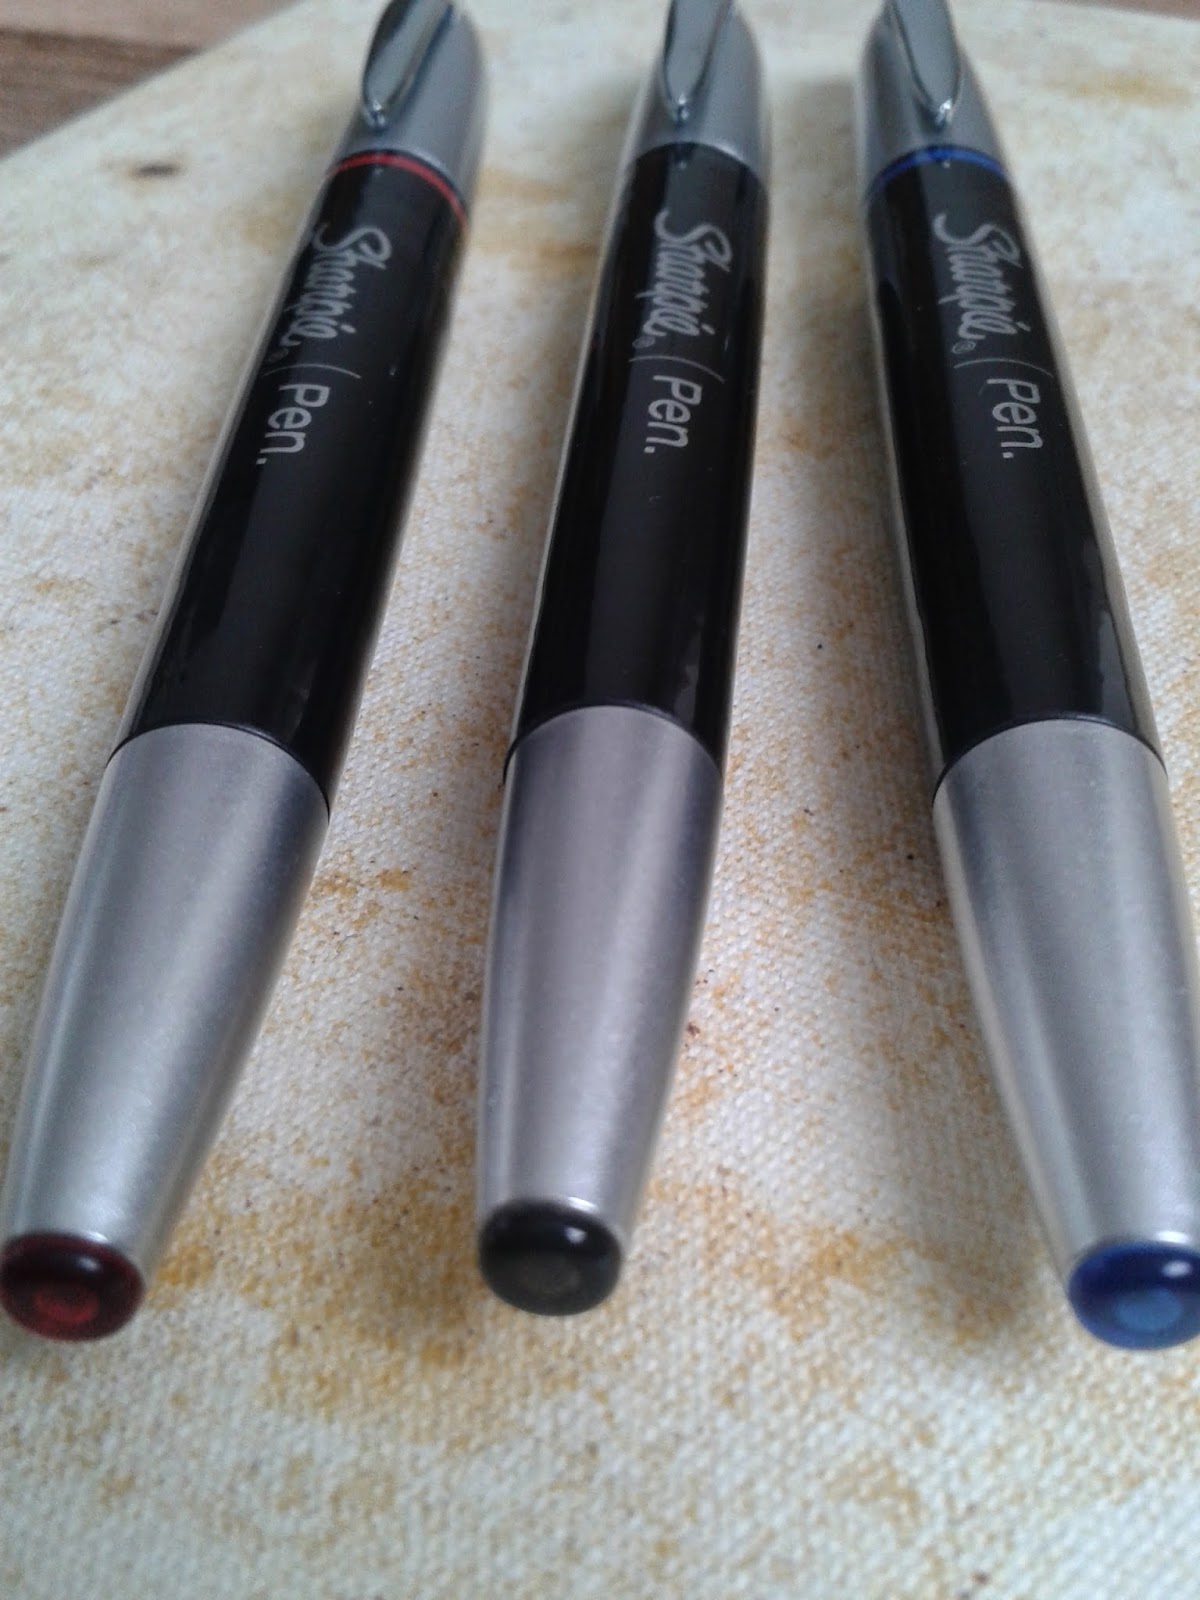 Pen Collection geekery: Sharpie Stylo Grip 0.4mm Pen